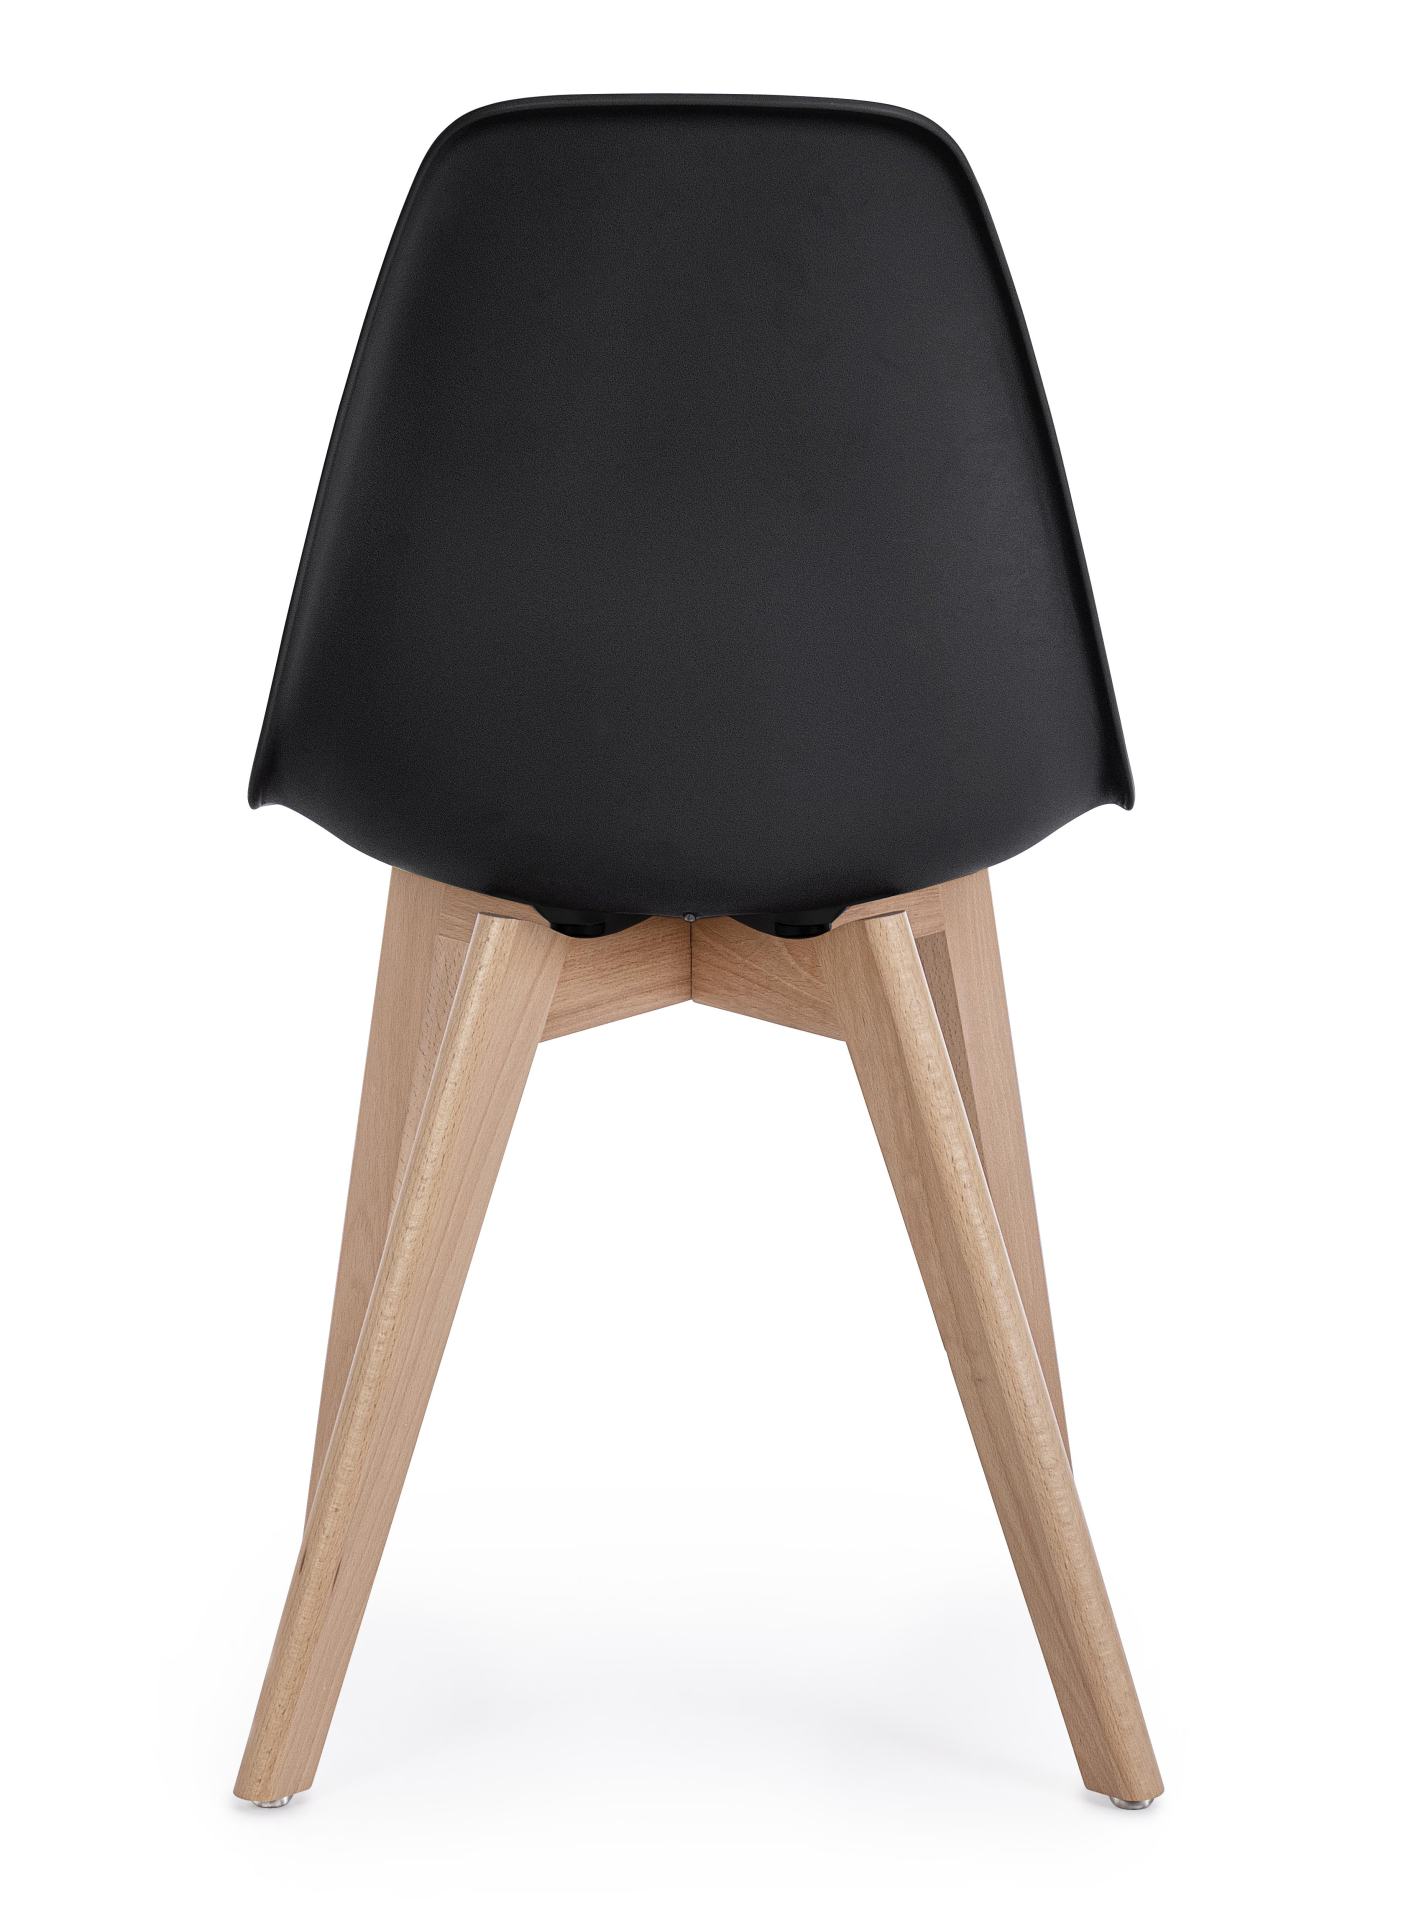 Der Stuhl System überzeugt mit seinem modernem Design. Gefertigt wurde der Stuhl aus Kunststoff, welcher einen schwarzen Farbton besitzt. Das Gestell ist aus Buchenholz. Die Sitzhöhe des Stuhls ist 46 cm